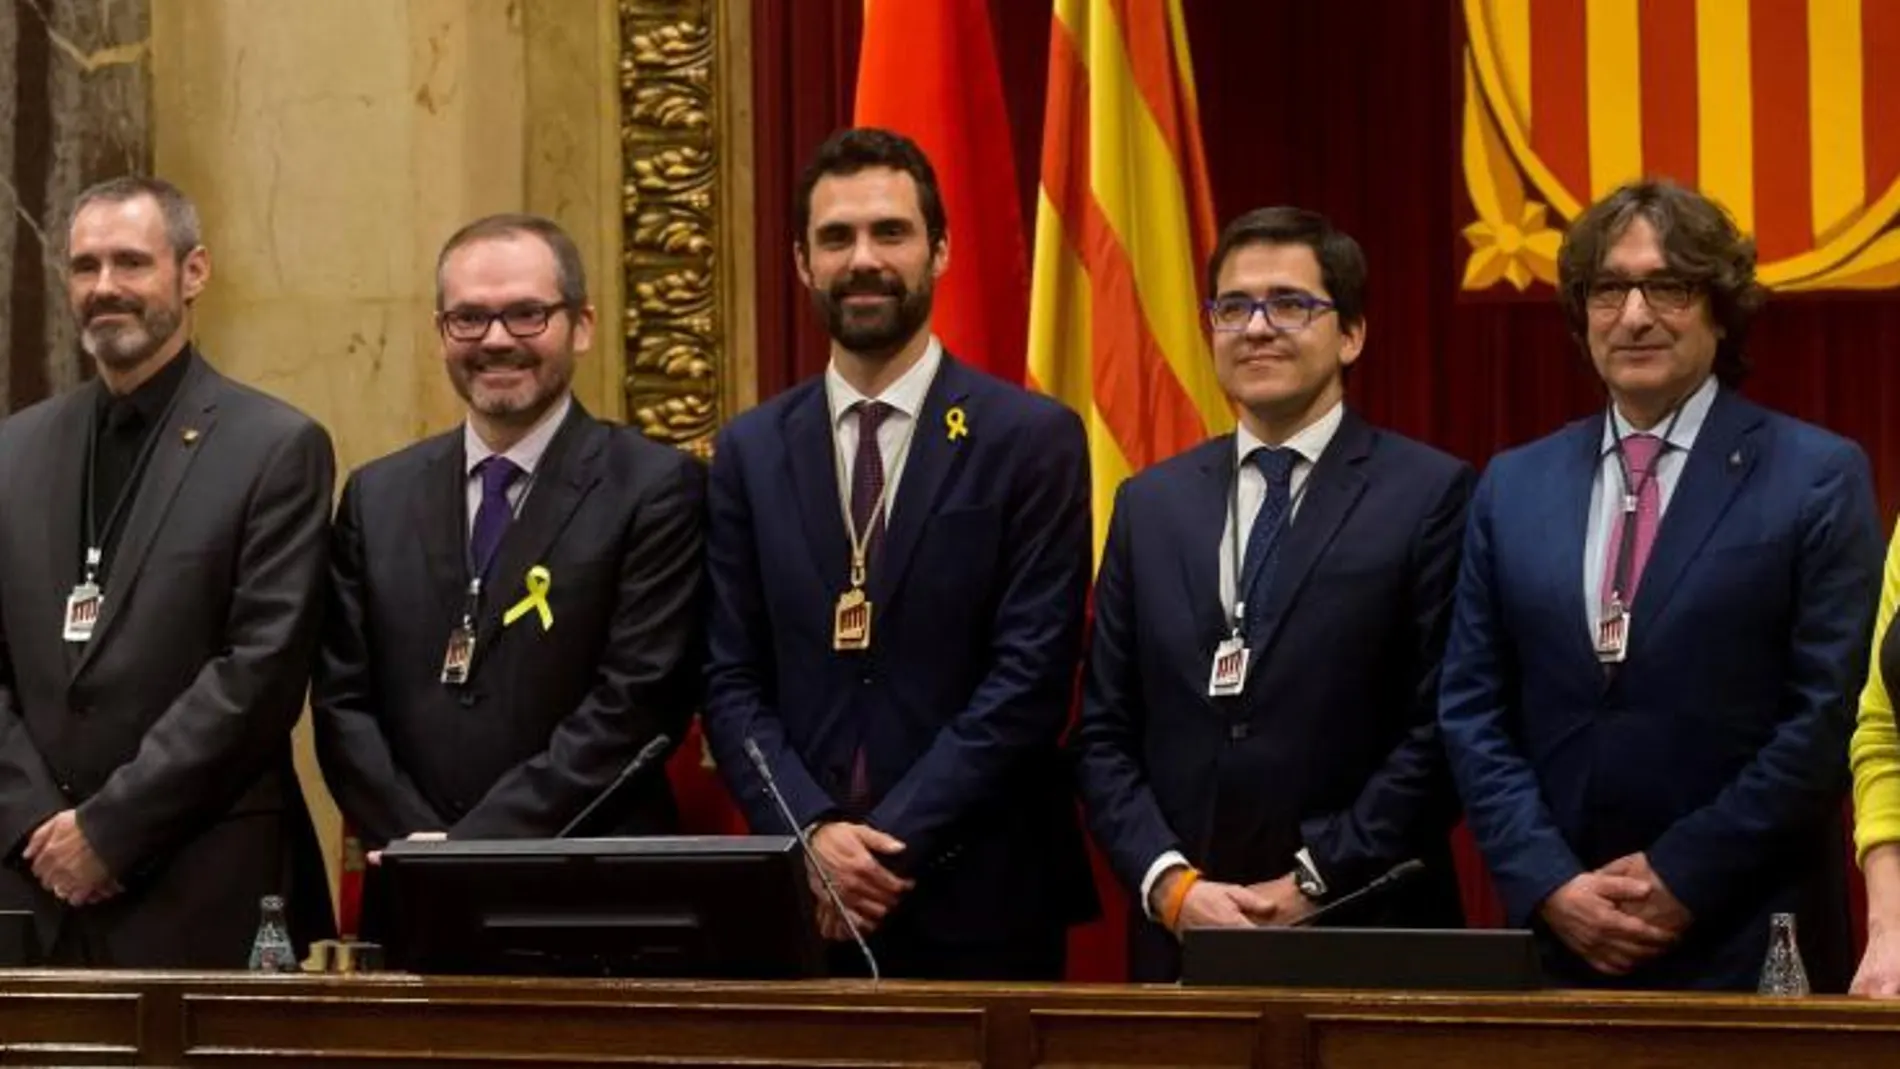 El nuevo president del Parlament de Cataluña, Roger Torrent, de ERC (c), los vicepresidentes Josep Costa de JxCat (3i) y José María Espejo-Saavedra de Ciudadanos (3d) ,y los secretarios Joan Garcia de Ciudadanos (i), Eusebi Campdepedrós de JxCat (2i), Alba Vergés de ERC (d), y David Pérez del PSC (2d). EFE/Quique García